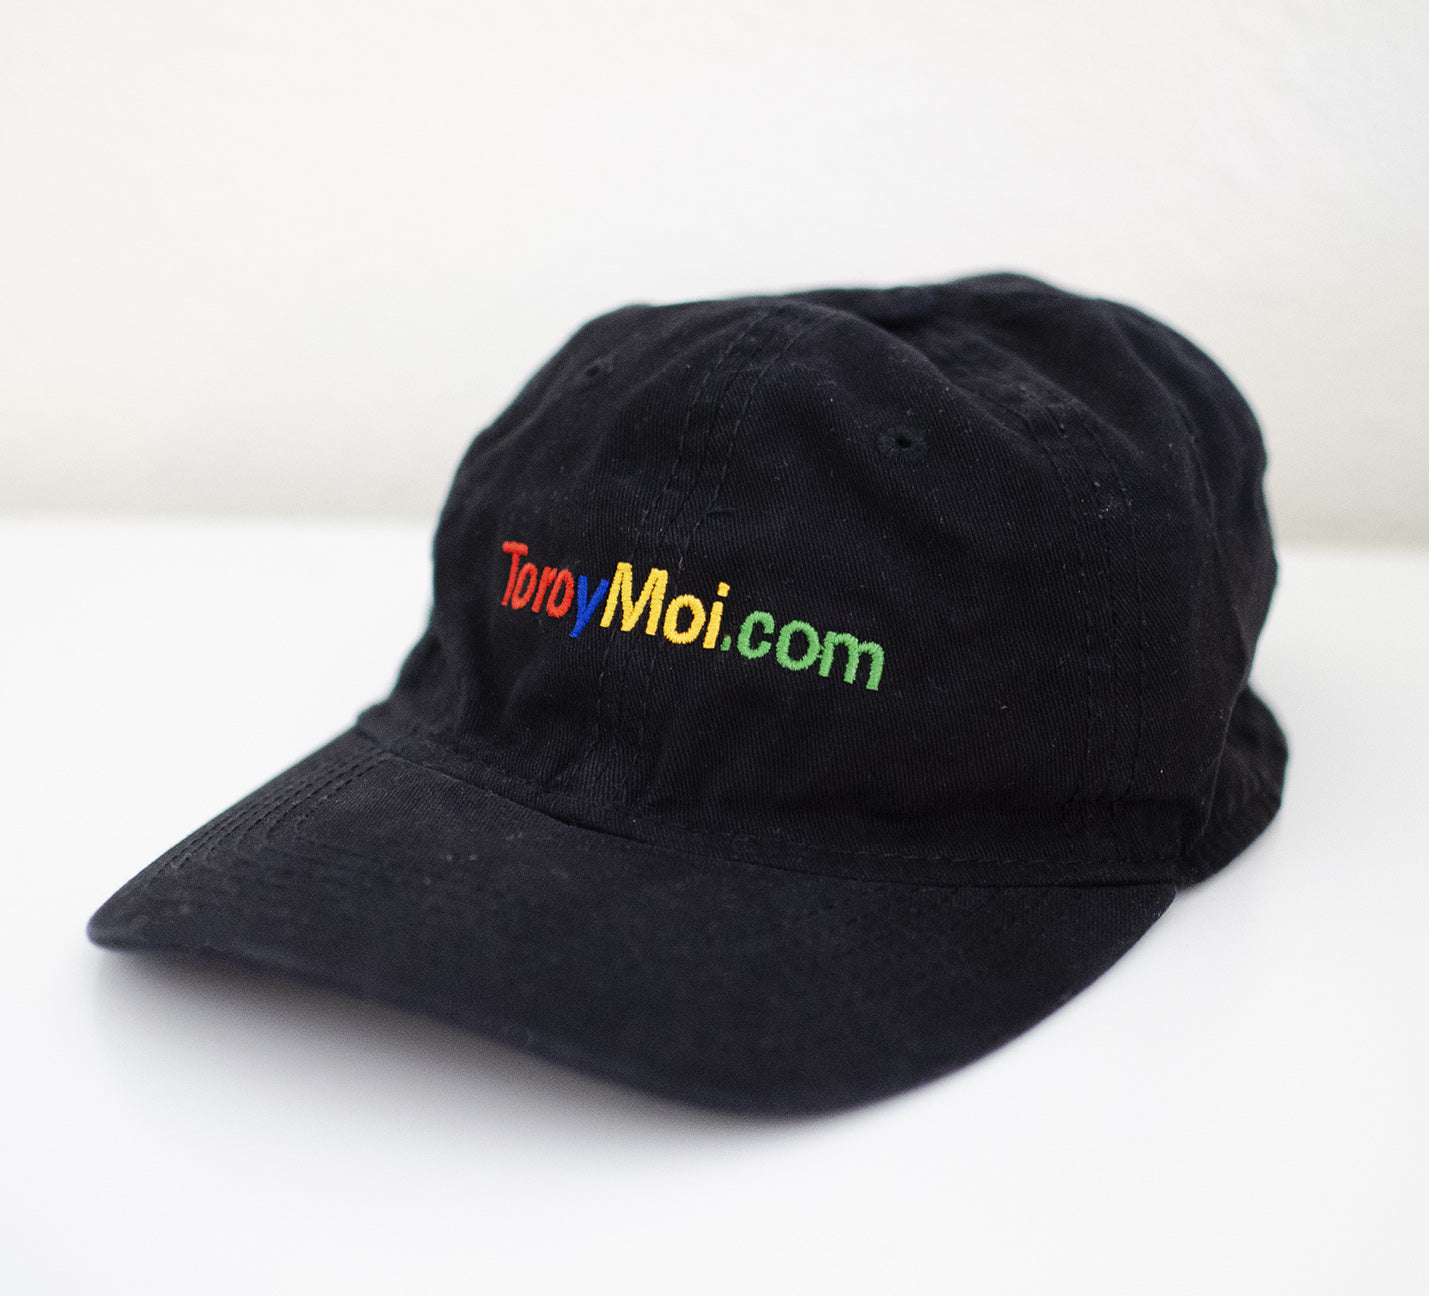 Dotcom Hat – Toro y Moi